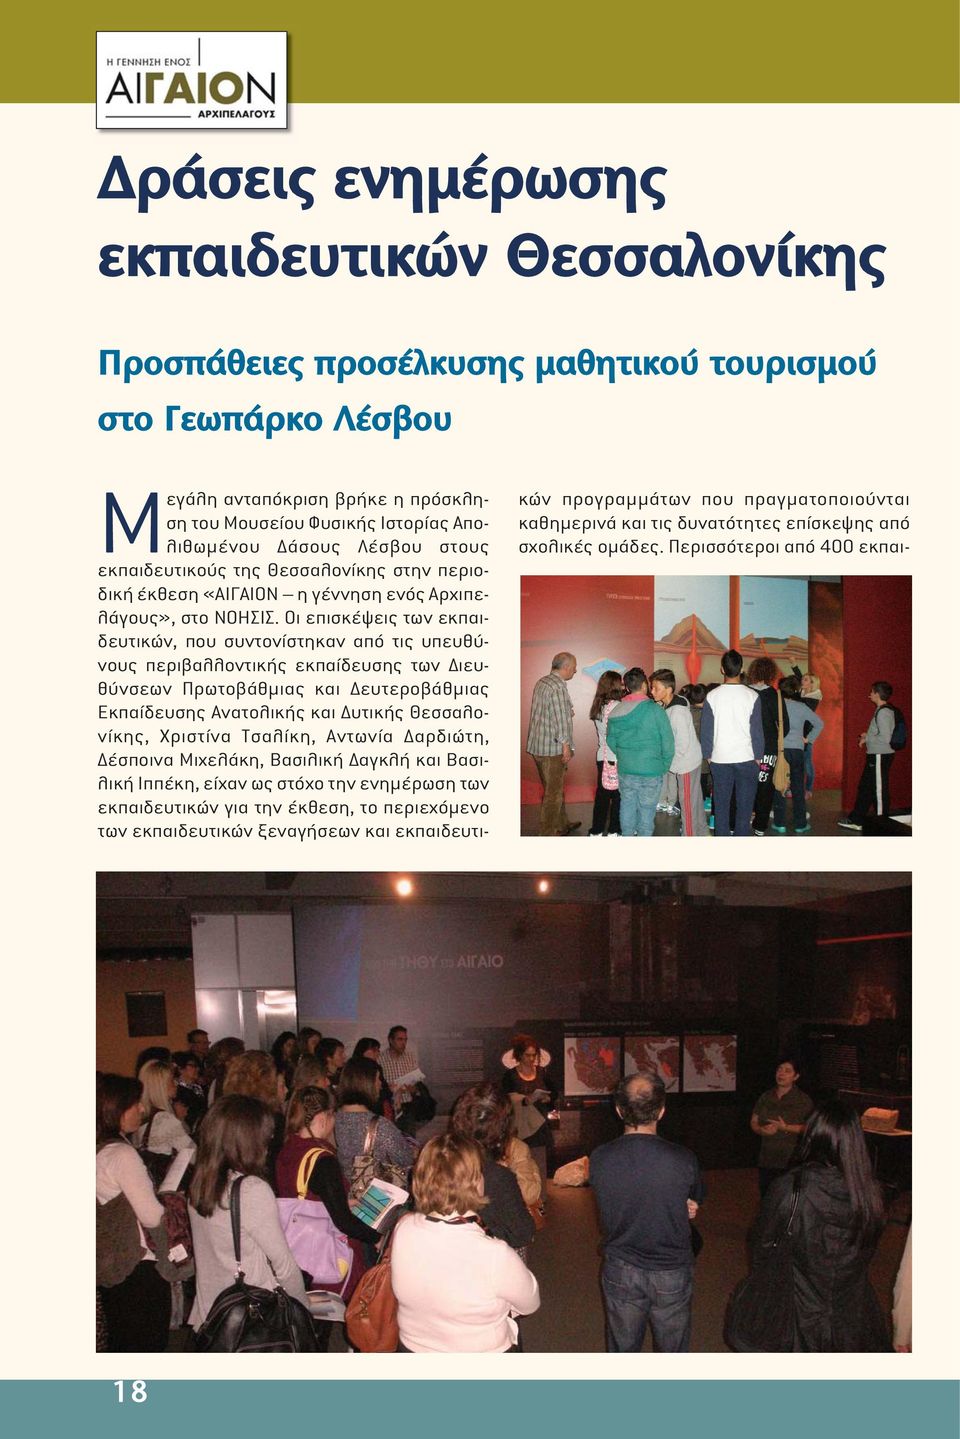 Οι επισκέψεις των εκπαιδευτικών, που συντονίστηκαν από τις υπευθύνους περιβαλλοντικής εκπαίδευσης των ιευθύνσεων Πρωτοβάθµιας και ευτεροβάθµιας Εκπαίδευσης Ανατολικής και υτικής Θεσσαλονίκης,